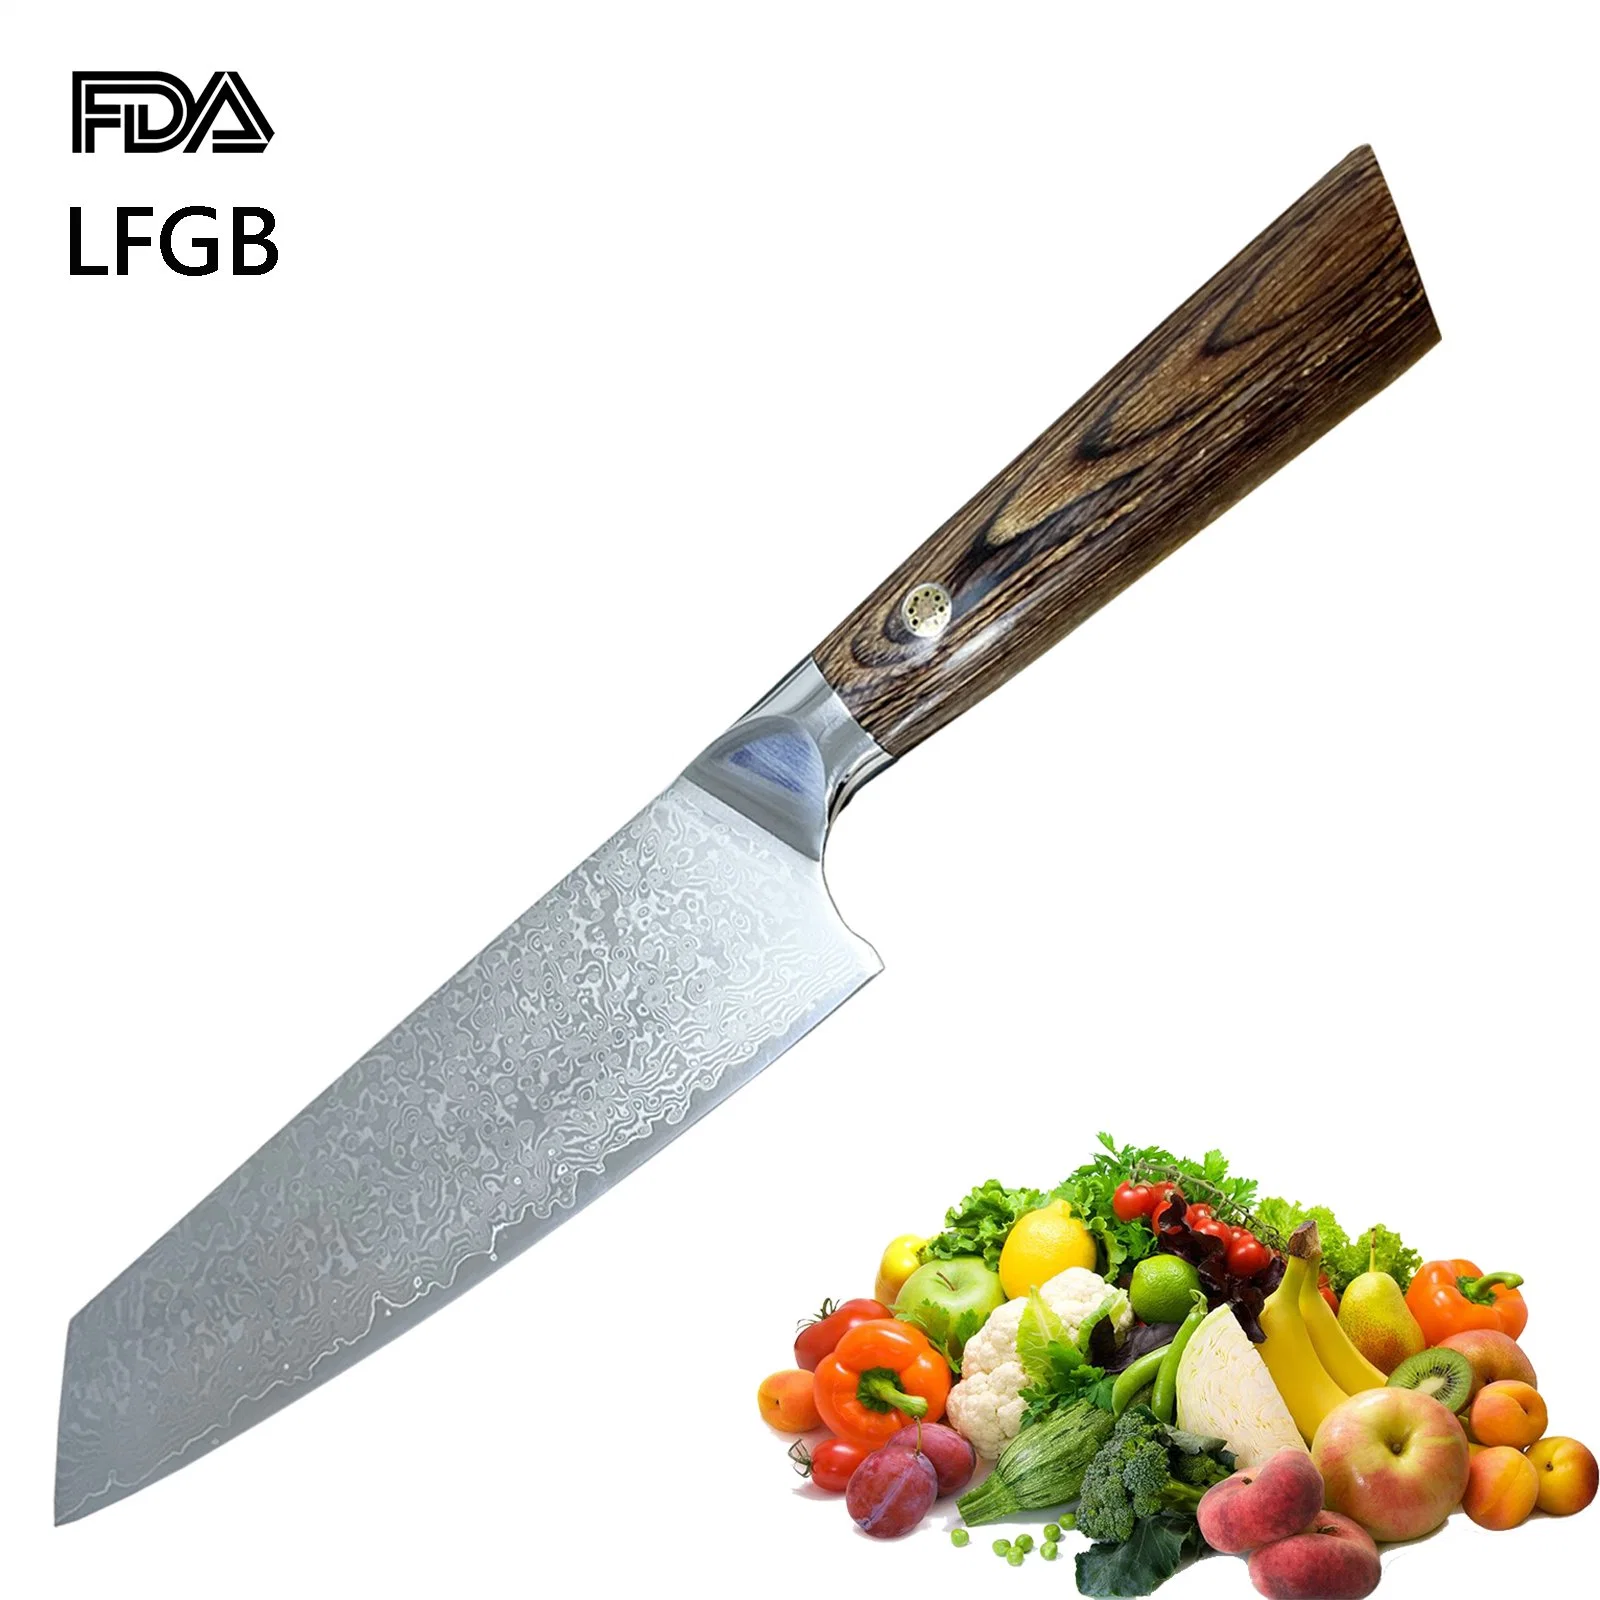 الشيف Knife 8 بوصة دمشق مطبخ من الفولاذ المقاوم للصدأ الطبخ سكين مقبض خشبي مريح